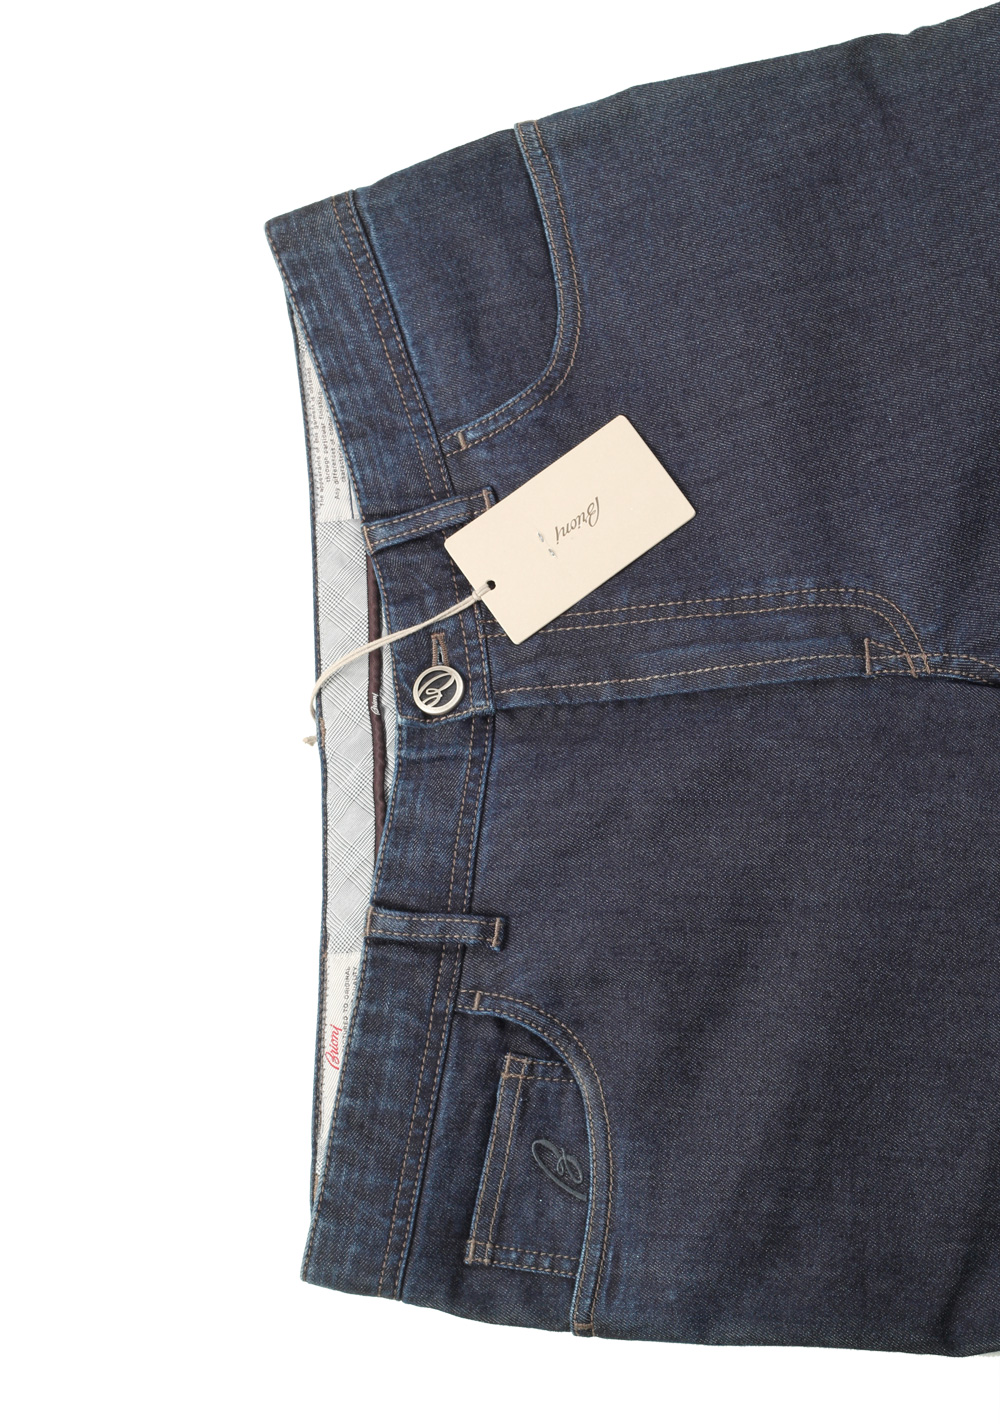 Brioni Blue Jeans Stelvio Trousers Size 52 / 36 U.S. | Costume Limité